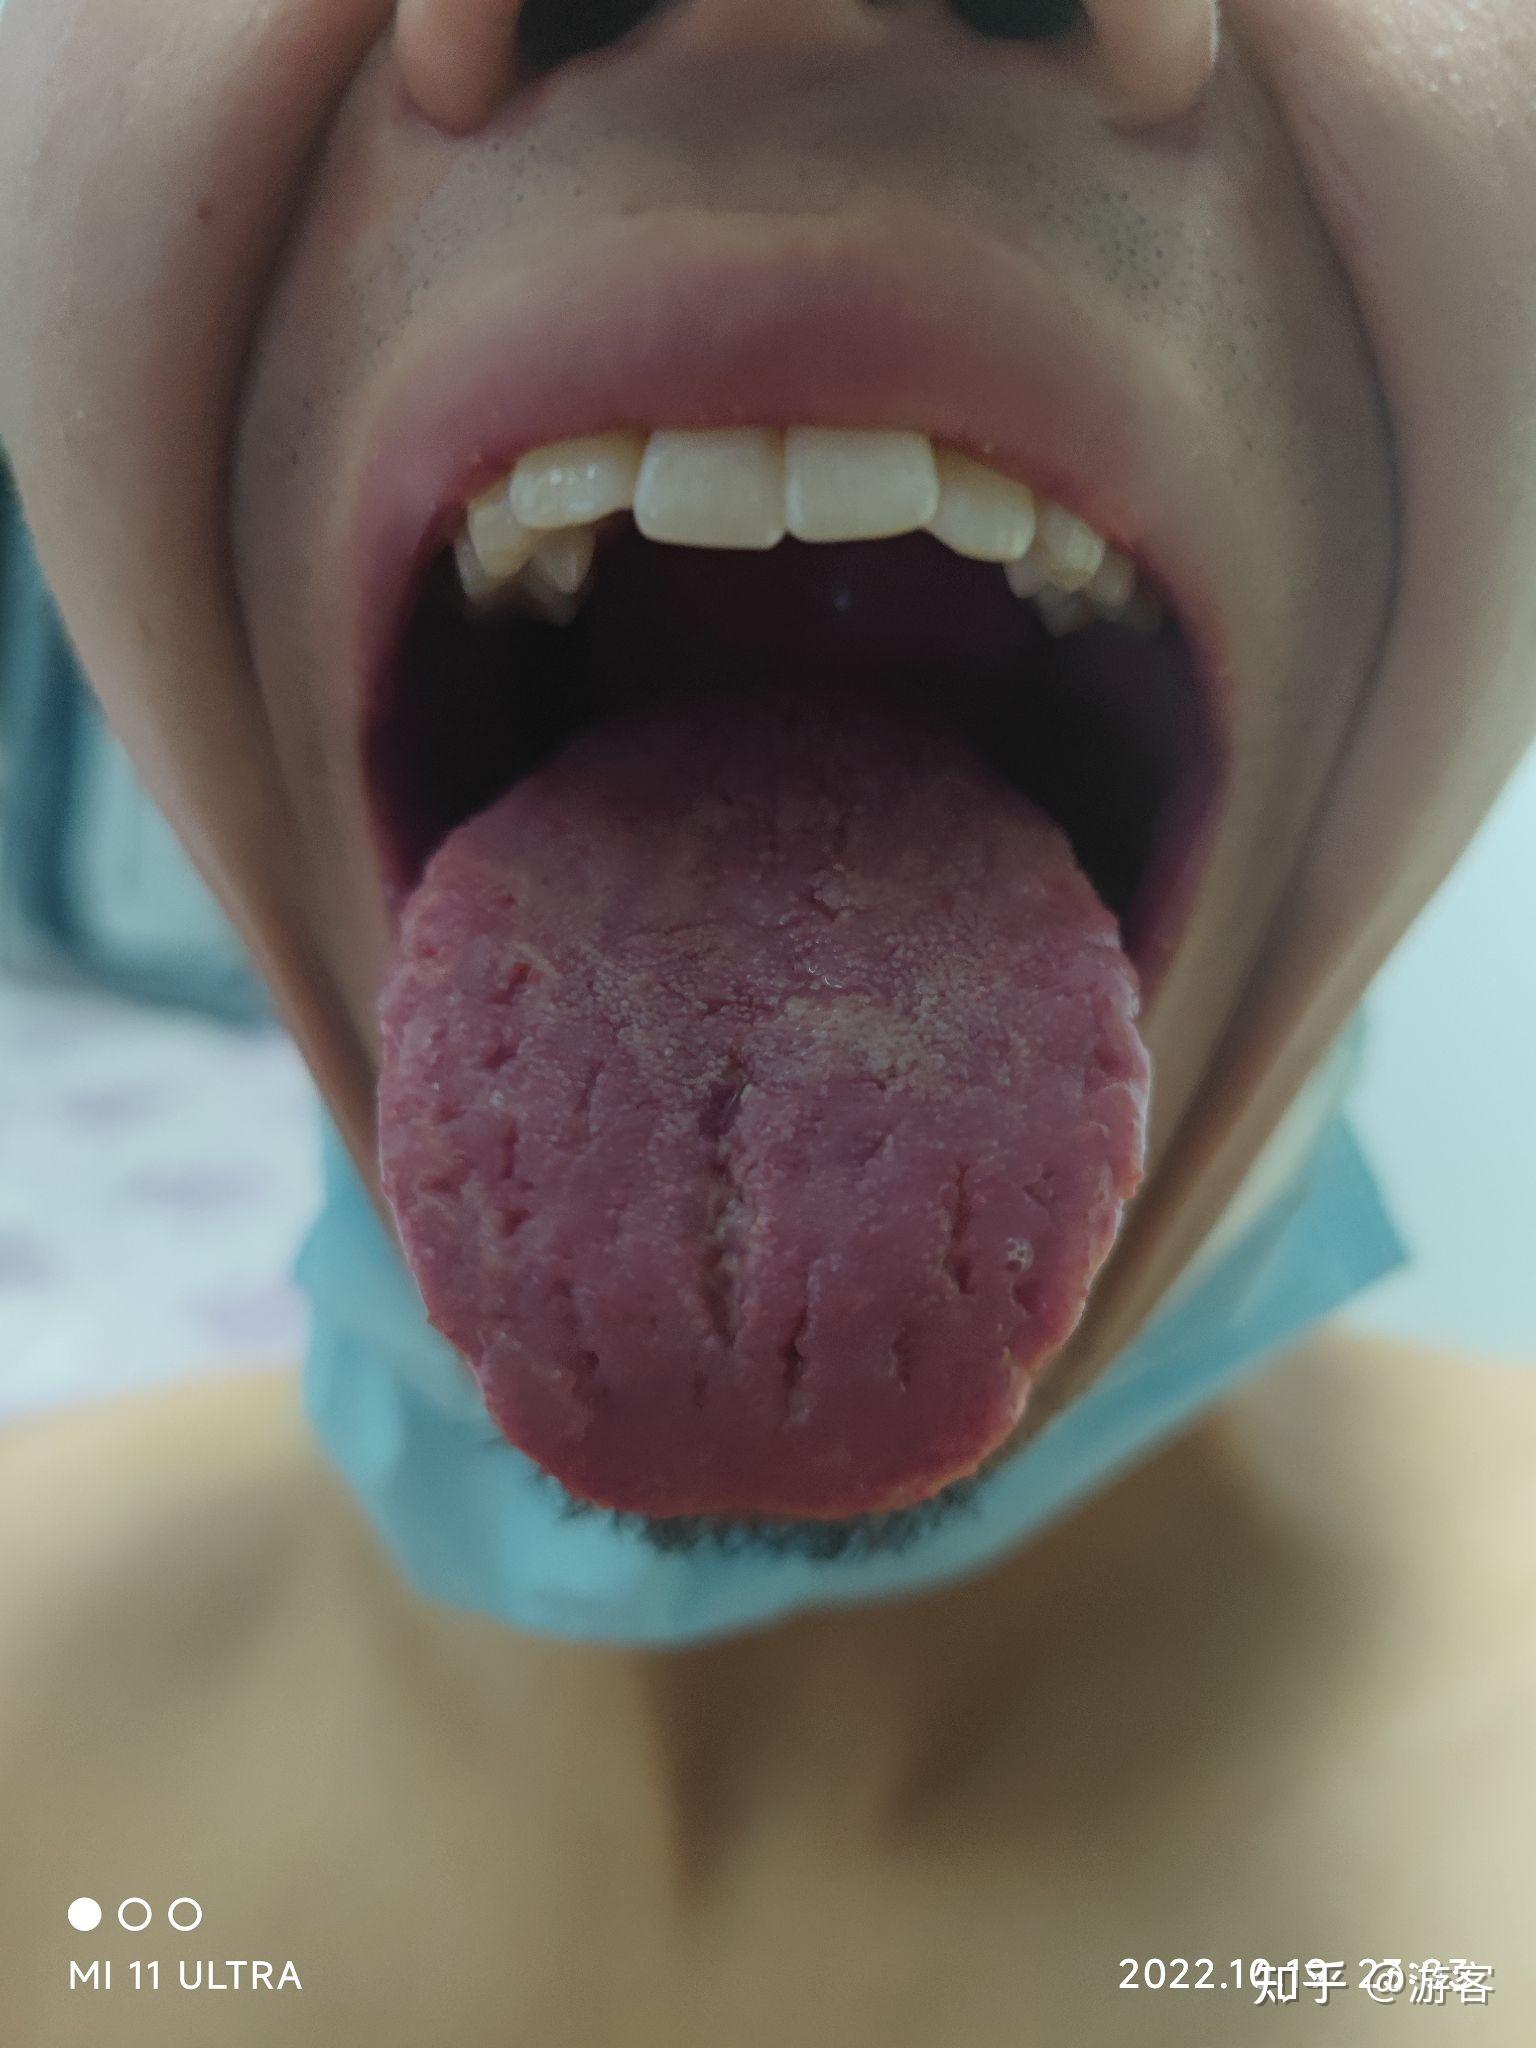 裂纹舌、齿痕舌、胖大舌分别代表了什么？ - 知乎